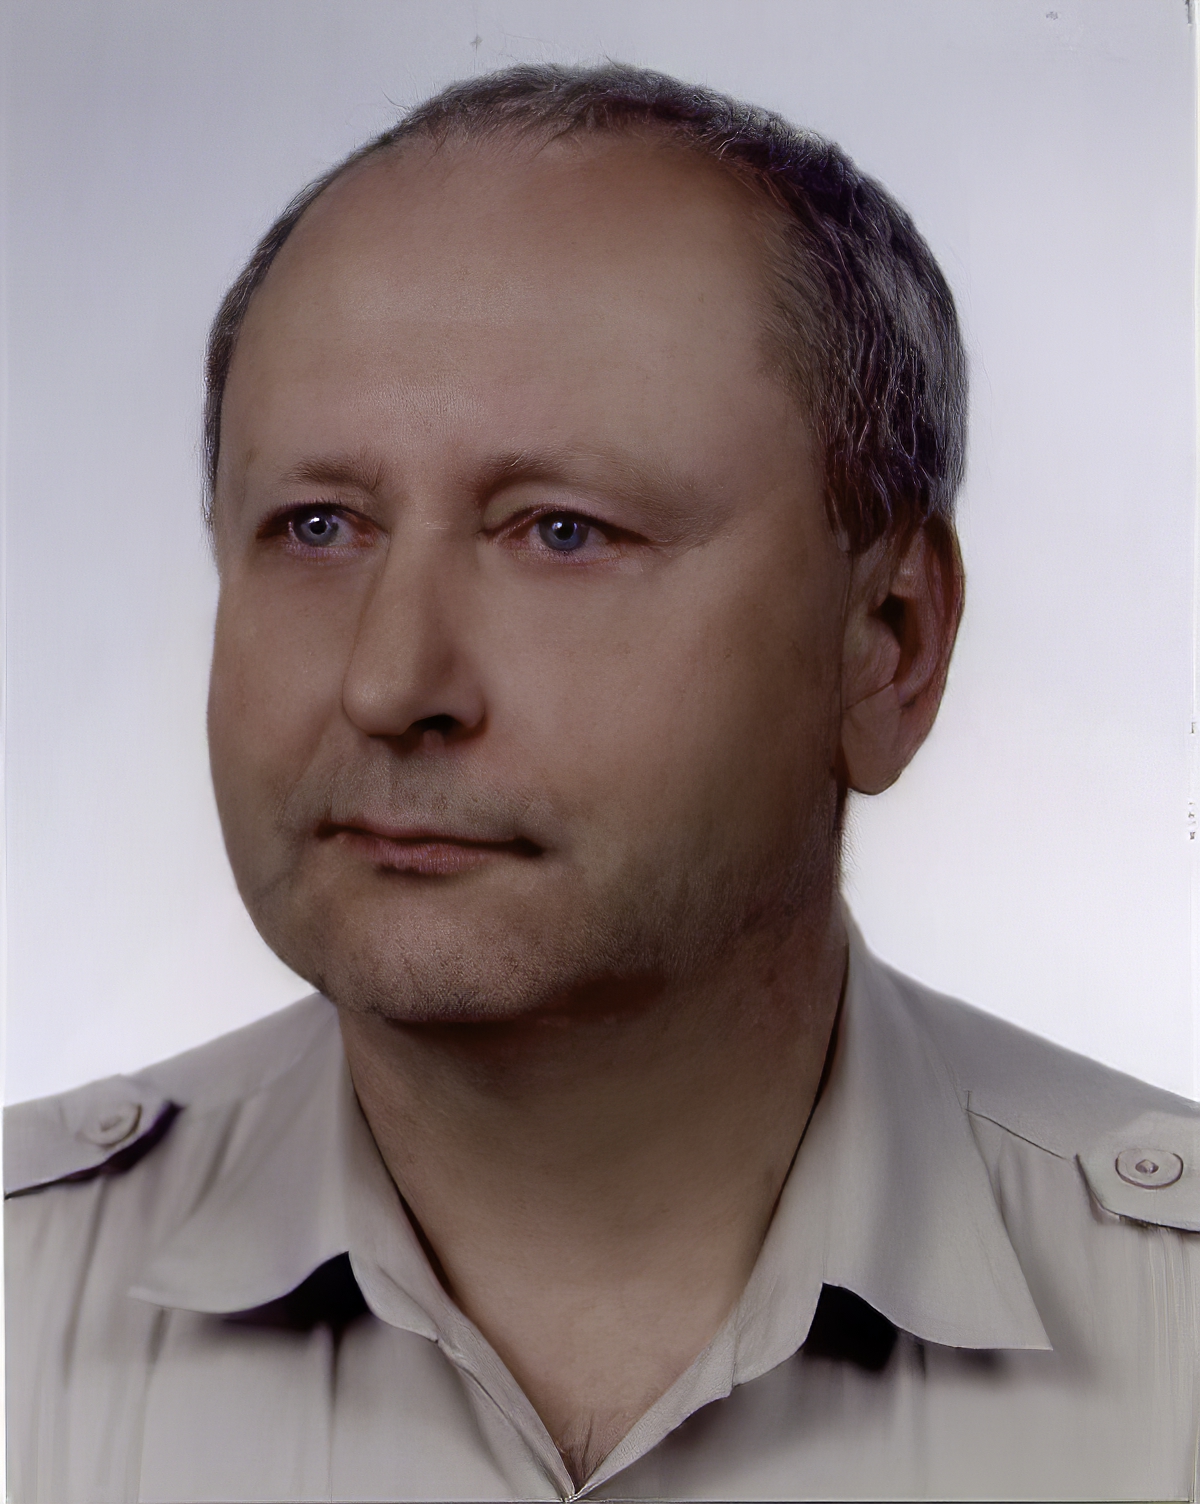 Dr Jan Pajak - passport photo taken on 19 July 2004